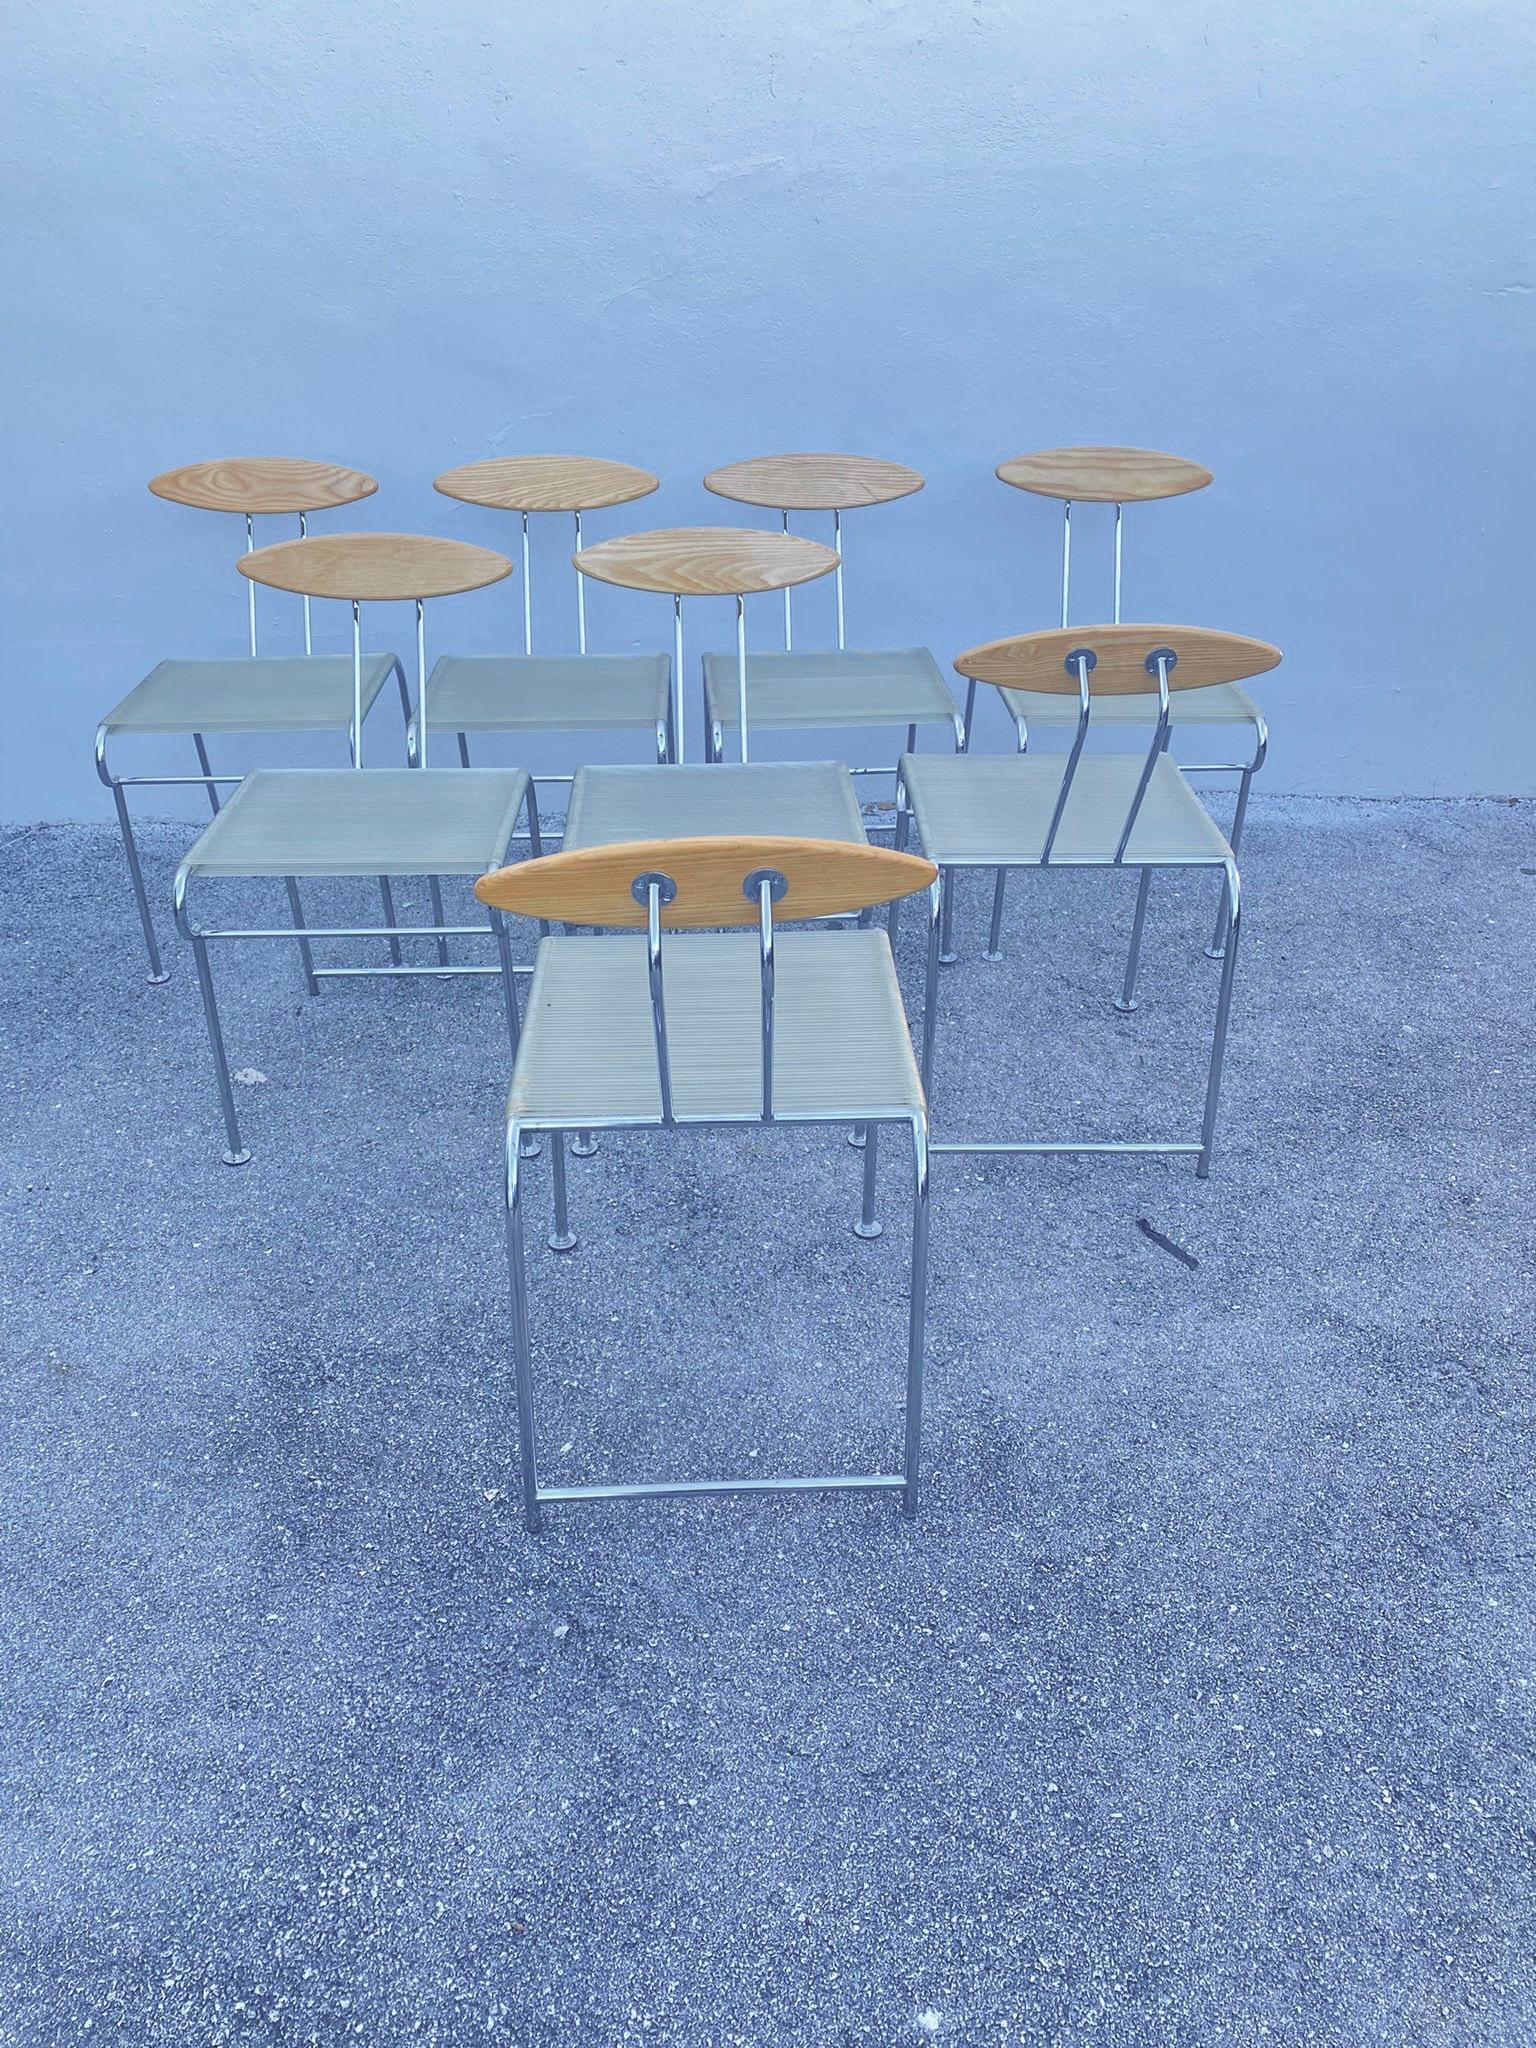 Ensemble de chaises de salle à manger vintage de style postmoderne CIRCA conçu par Massimo Iosa Ghini pour Moroso vers 1987 en Italie. Fabriqué en métal, en bois de frêne et en caoutchouc élastique transparent. RARE groupe de 8 chaises de salle à